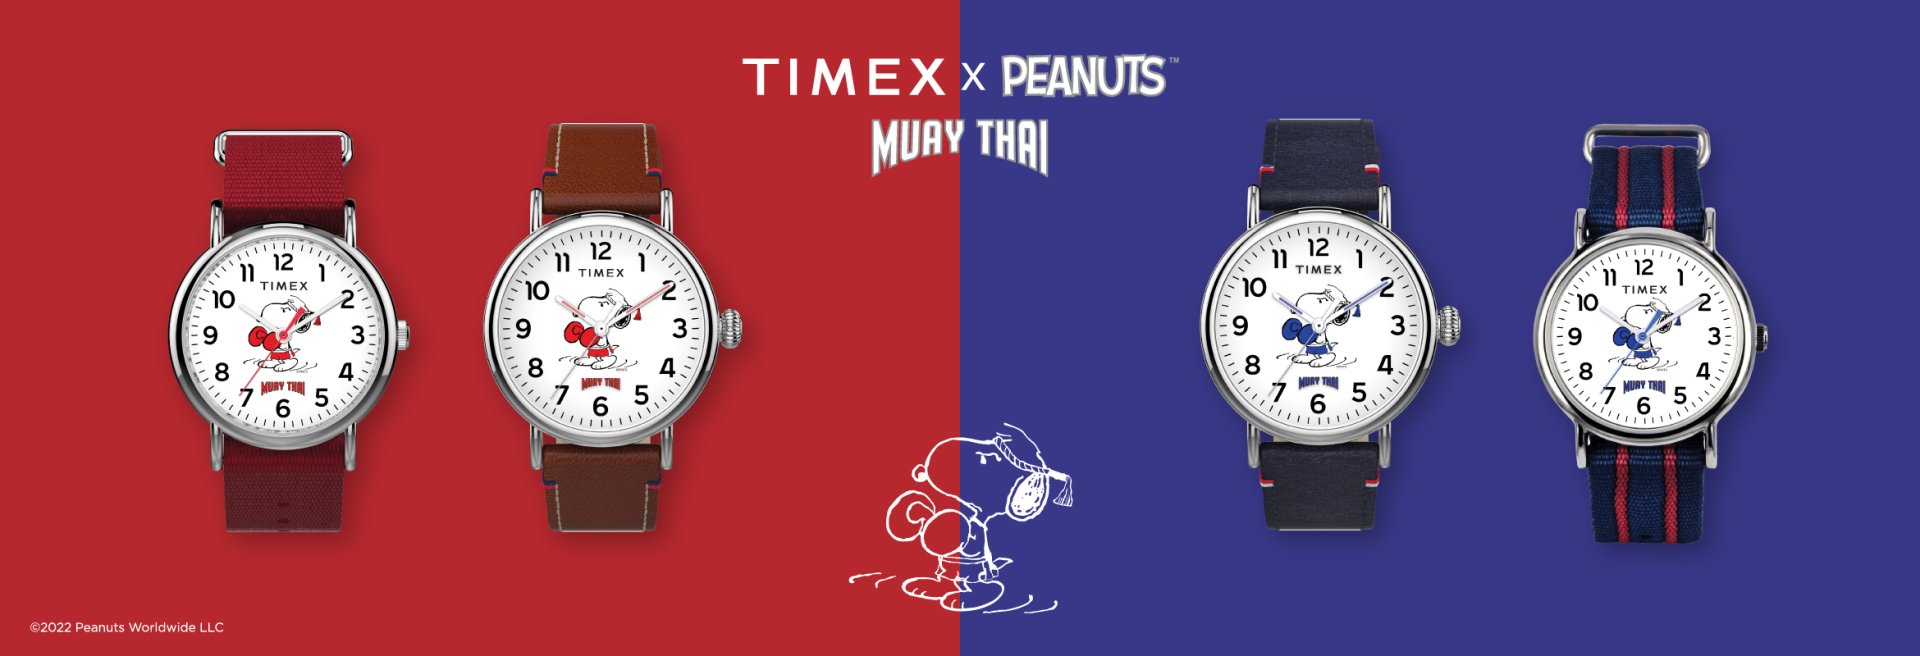 timex-x-peanuts-muay-thai